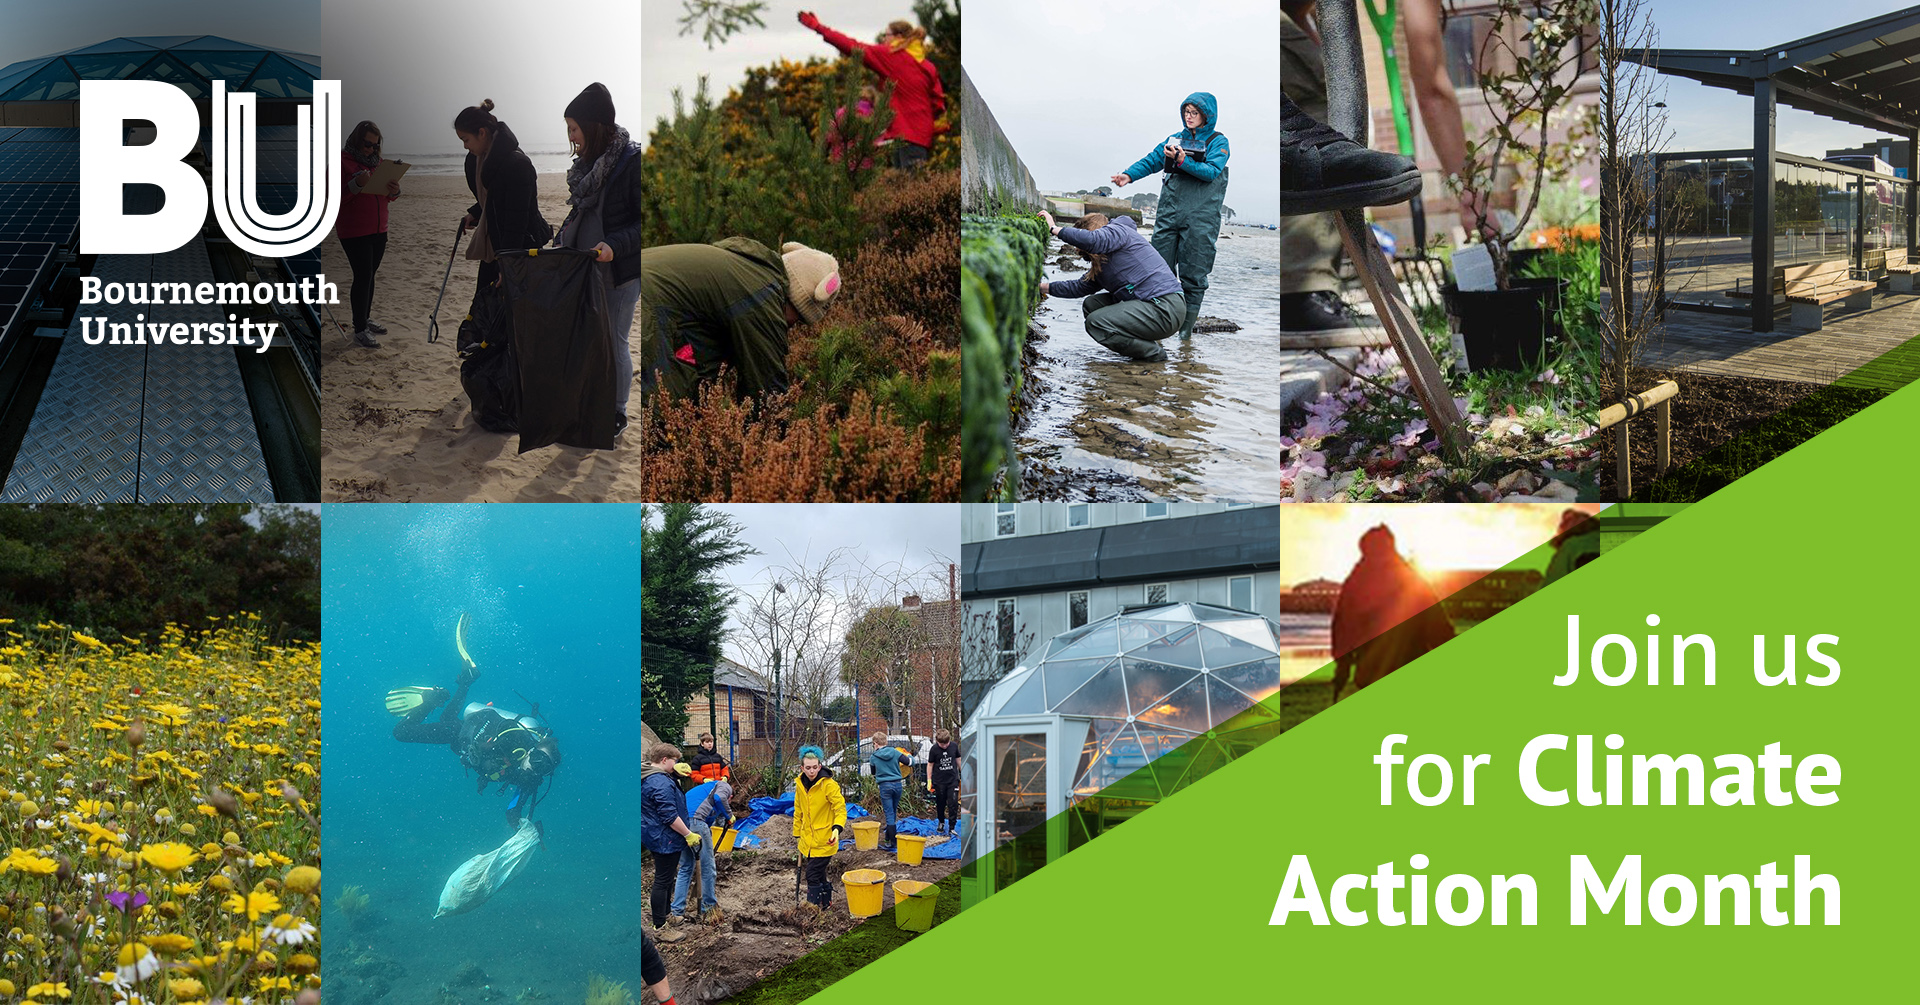 11318 ESTATES Climate Action Month Assets - Facebook Event Cover V1.3.jpg